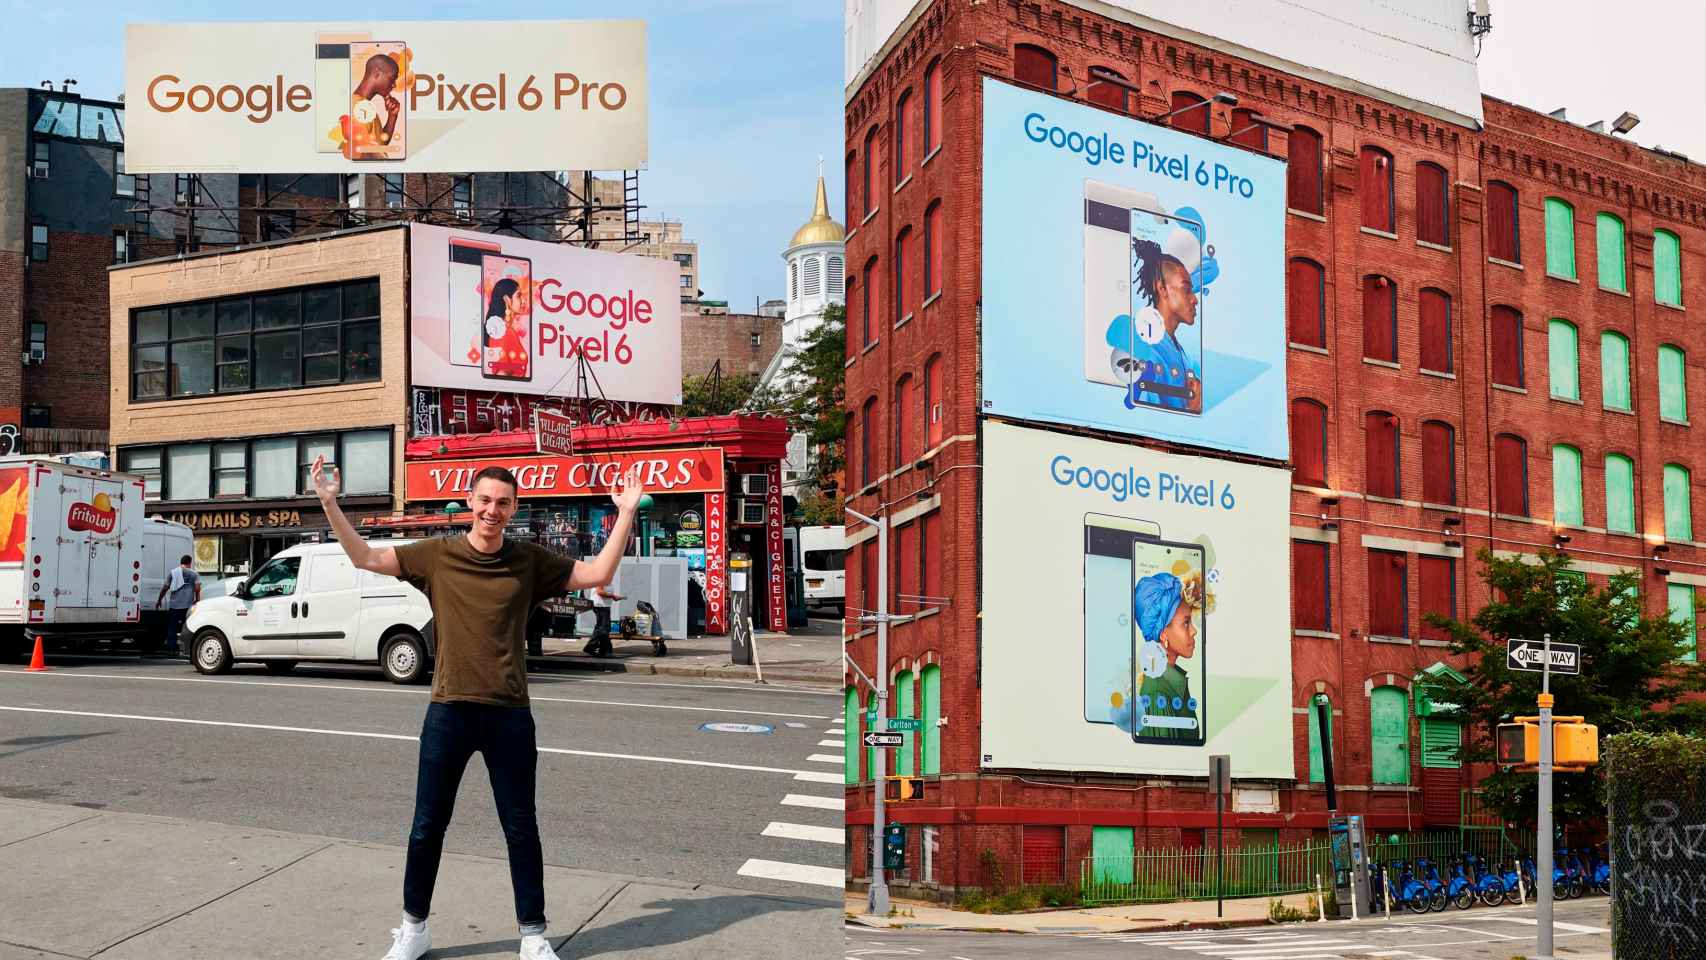 Anuncios en vallas publicitarias de los Pixel 6